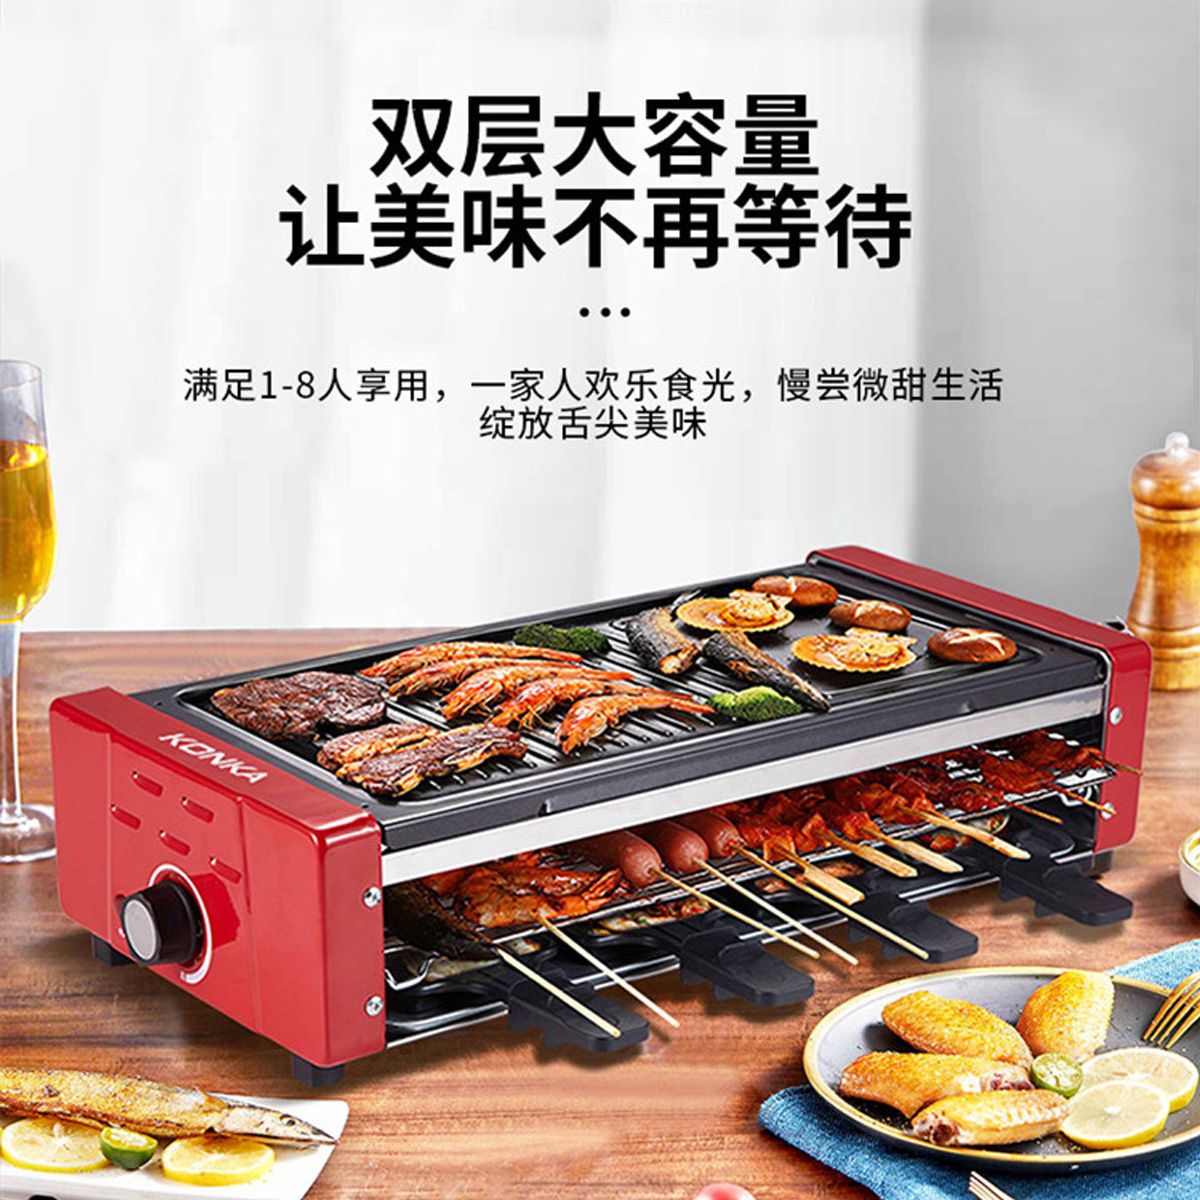 【工厂直销】康佳烤串机电烤炉电烤盘三层家庭插电烤羊肉串烤肉机